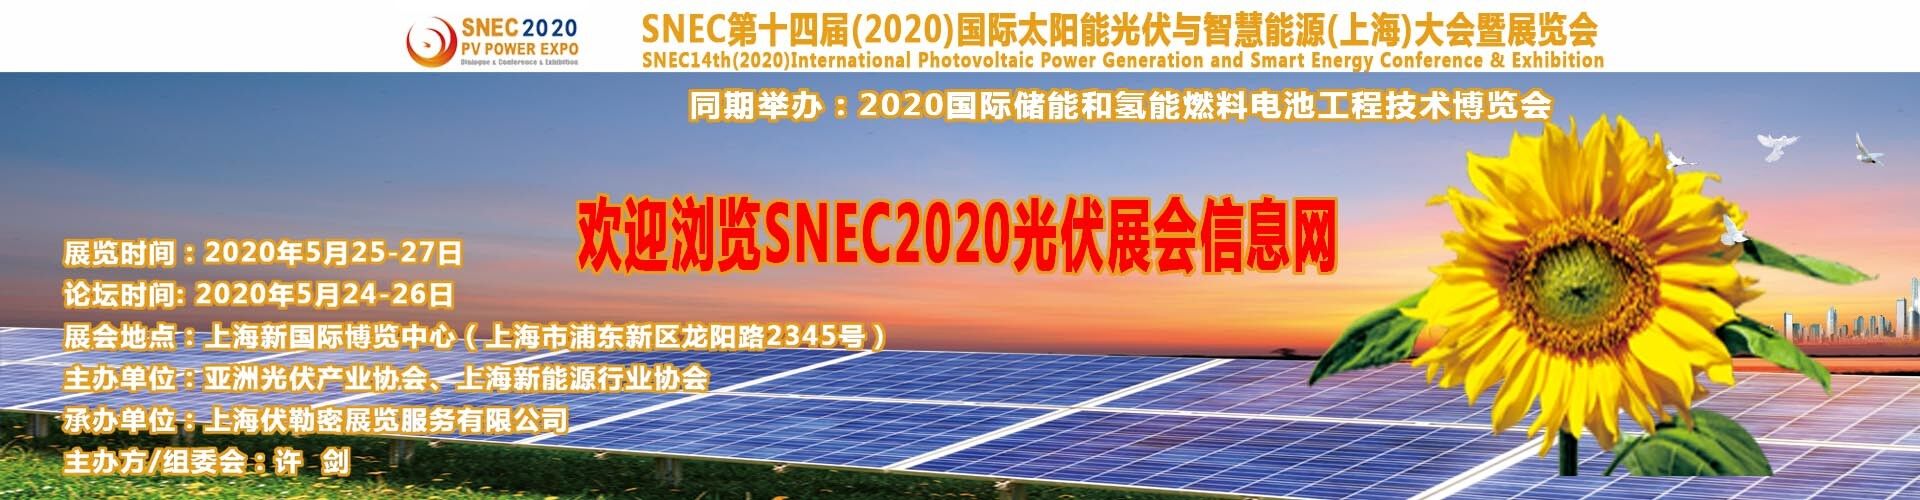 2018年SNEC上海太陽能展會/陽光電源在哪個館